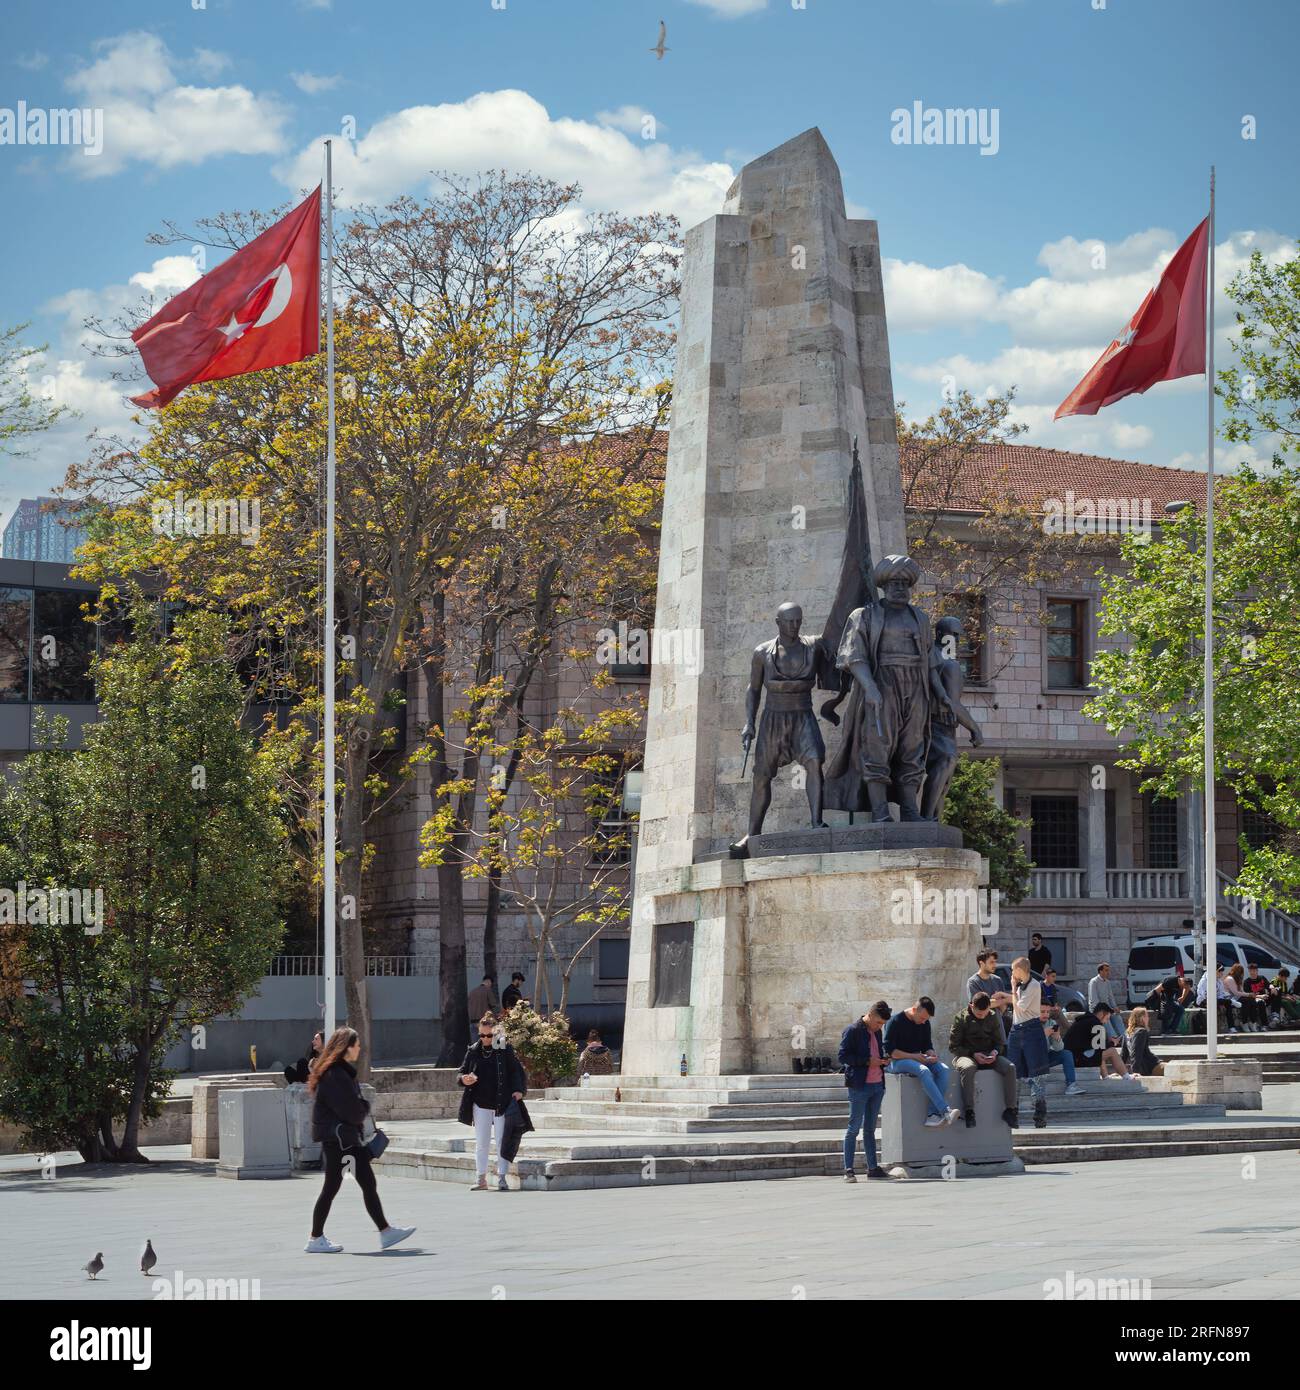 Istanbul, Turchia - 7 maggio 2023: Monumento Barbaros in Piazza Barbaros, quartiere di Besiktas. Il monumento è una grande statua in bronzo di Barbaros Hayreddin Pasha, un famoso ammiraglio ottomano Foto Stock